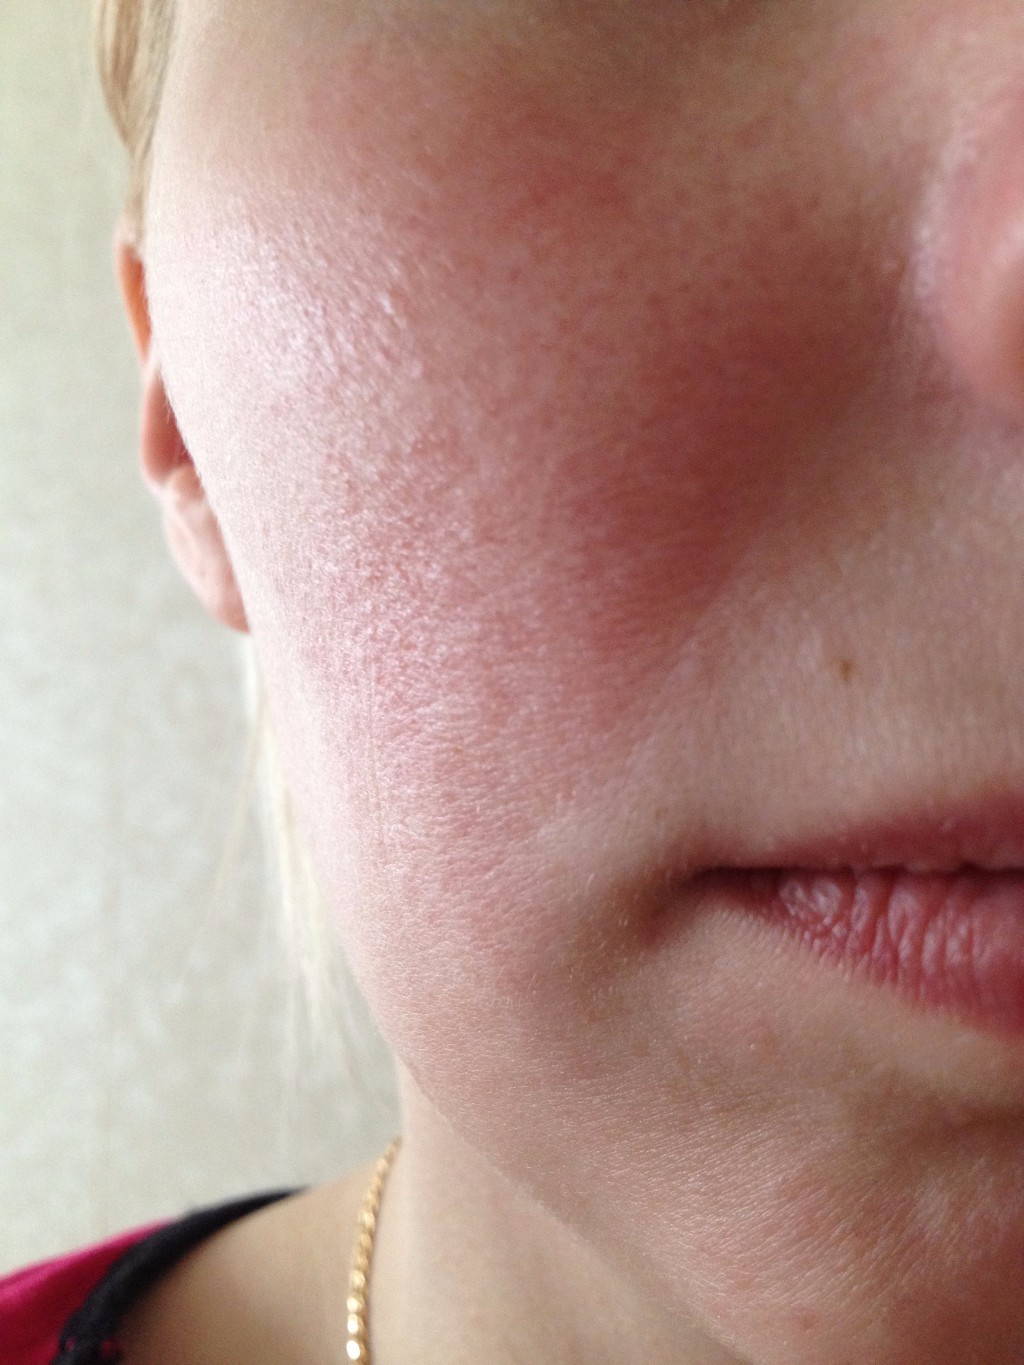 Покраснение на лице не проходит 3 года - Вопрос дерматологу - 03 Онлайн